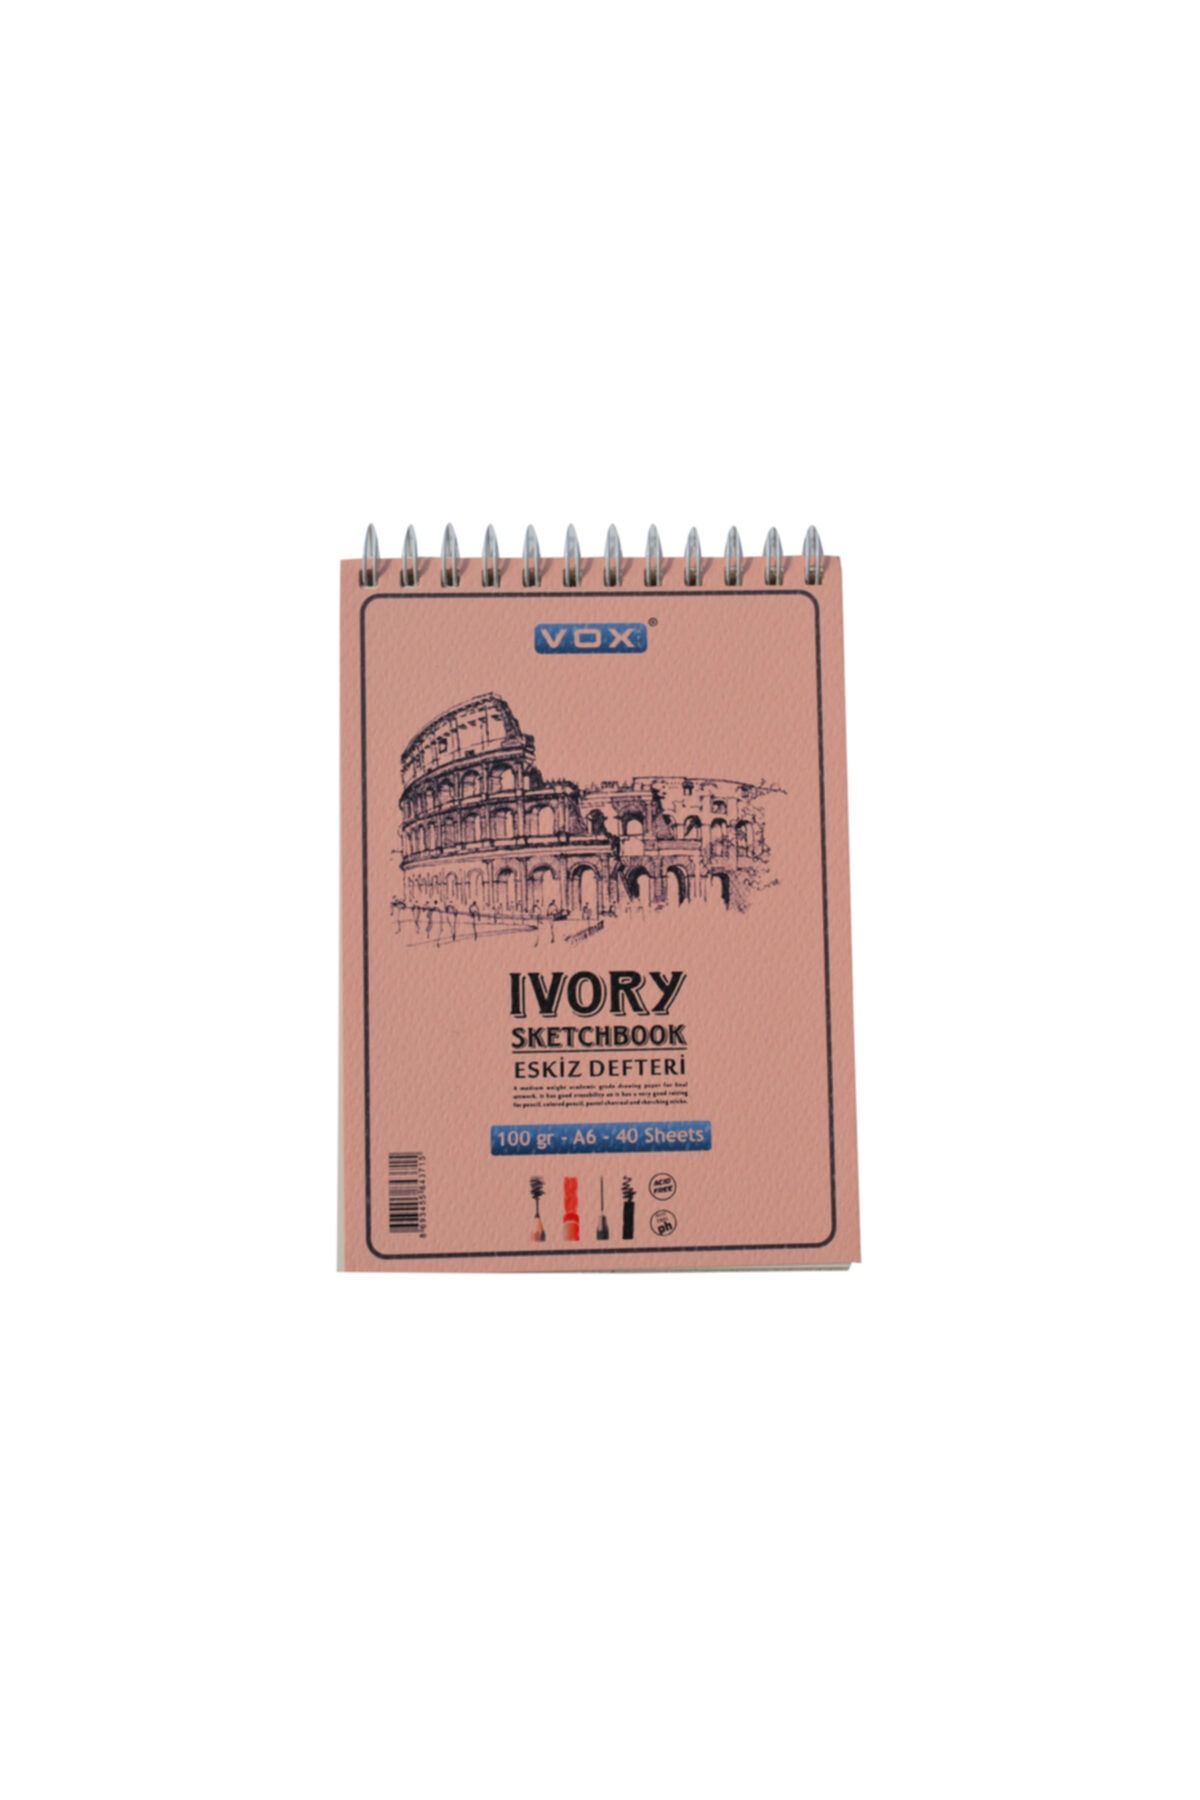 Vox Art A6 Eskiz Defteri Sketchbook Ivory 100 Gr. 40 Yaprak (220-17)